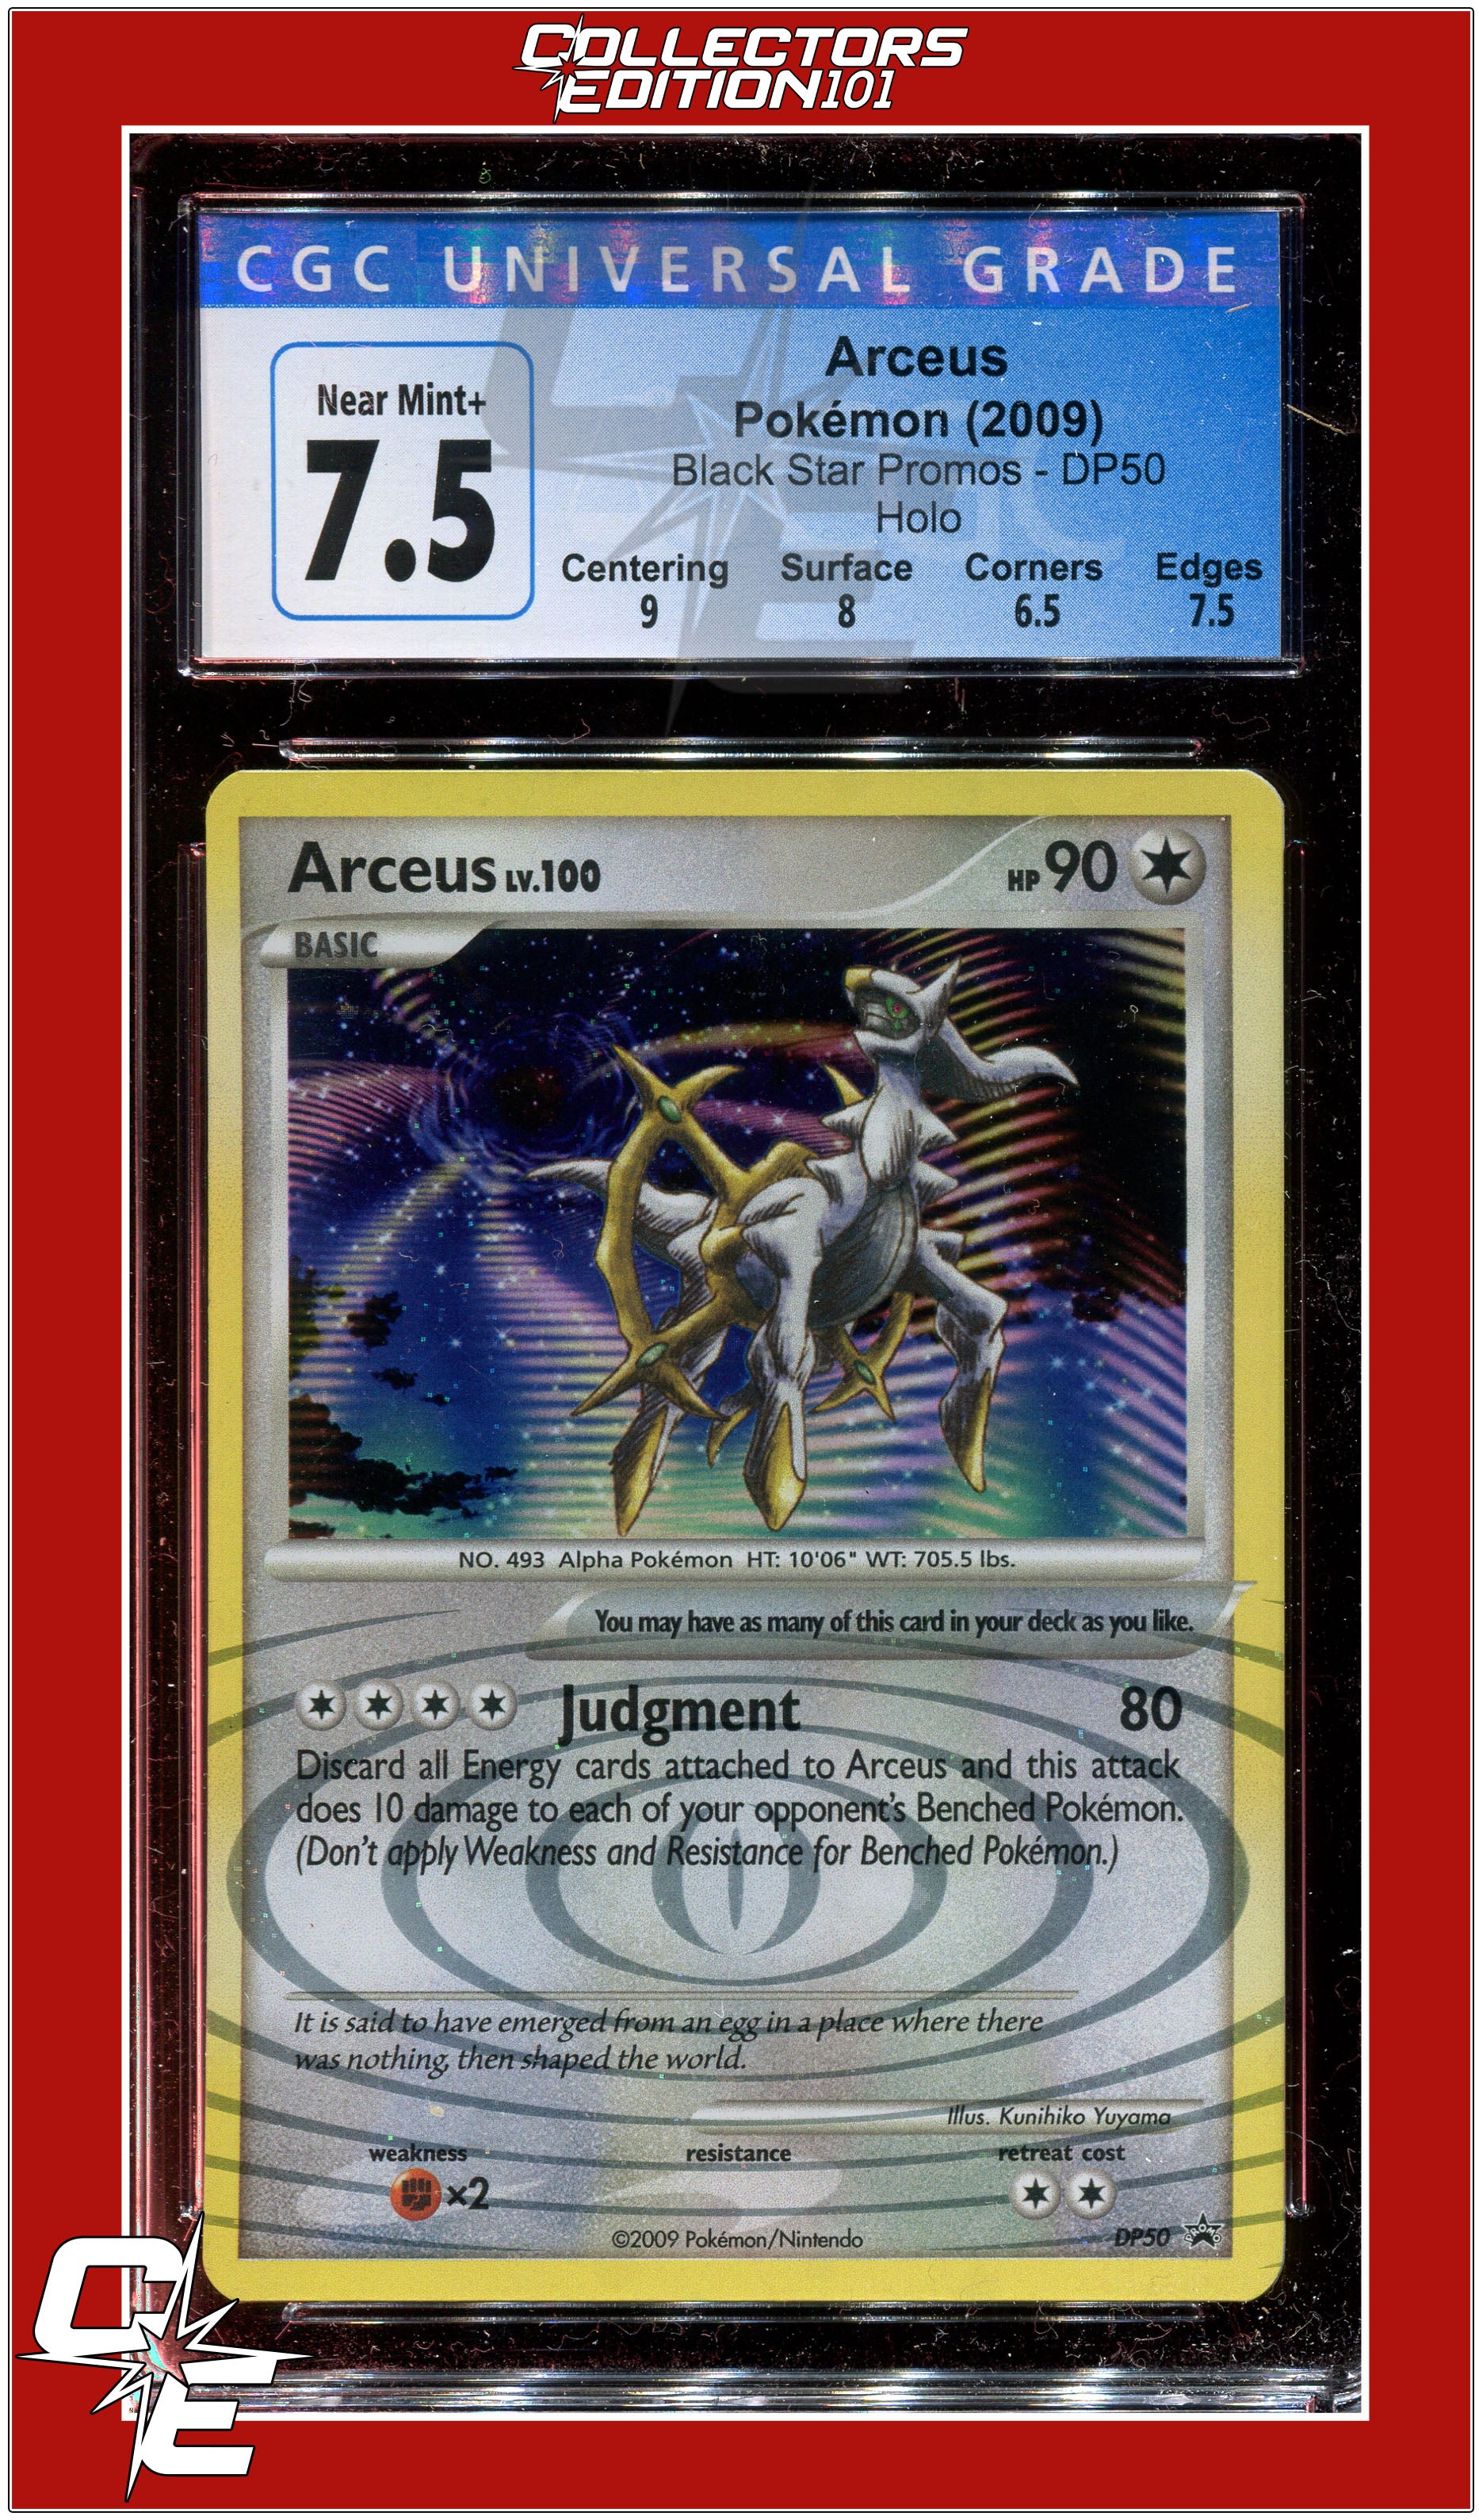 Arceus LV.X (Arceus)  Cool pokemon cards, Pokemon cards, Pokemon rayquaza